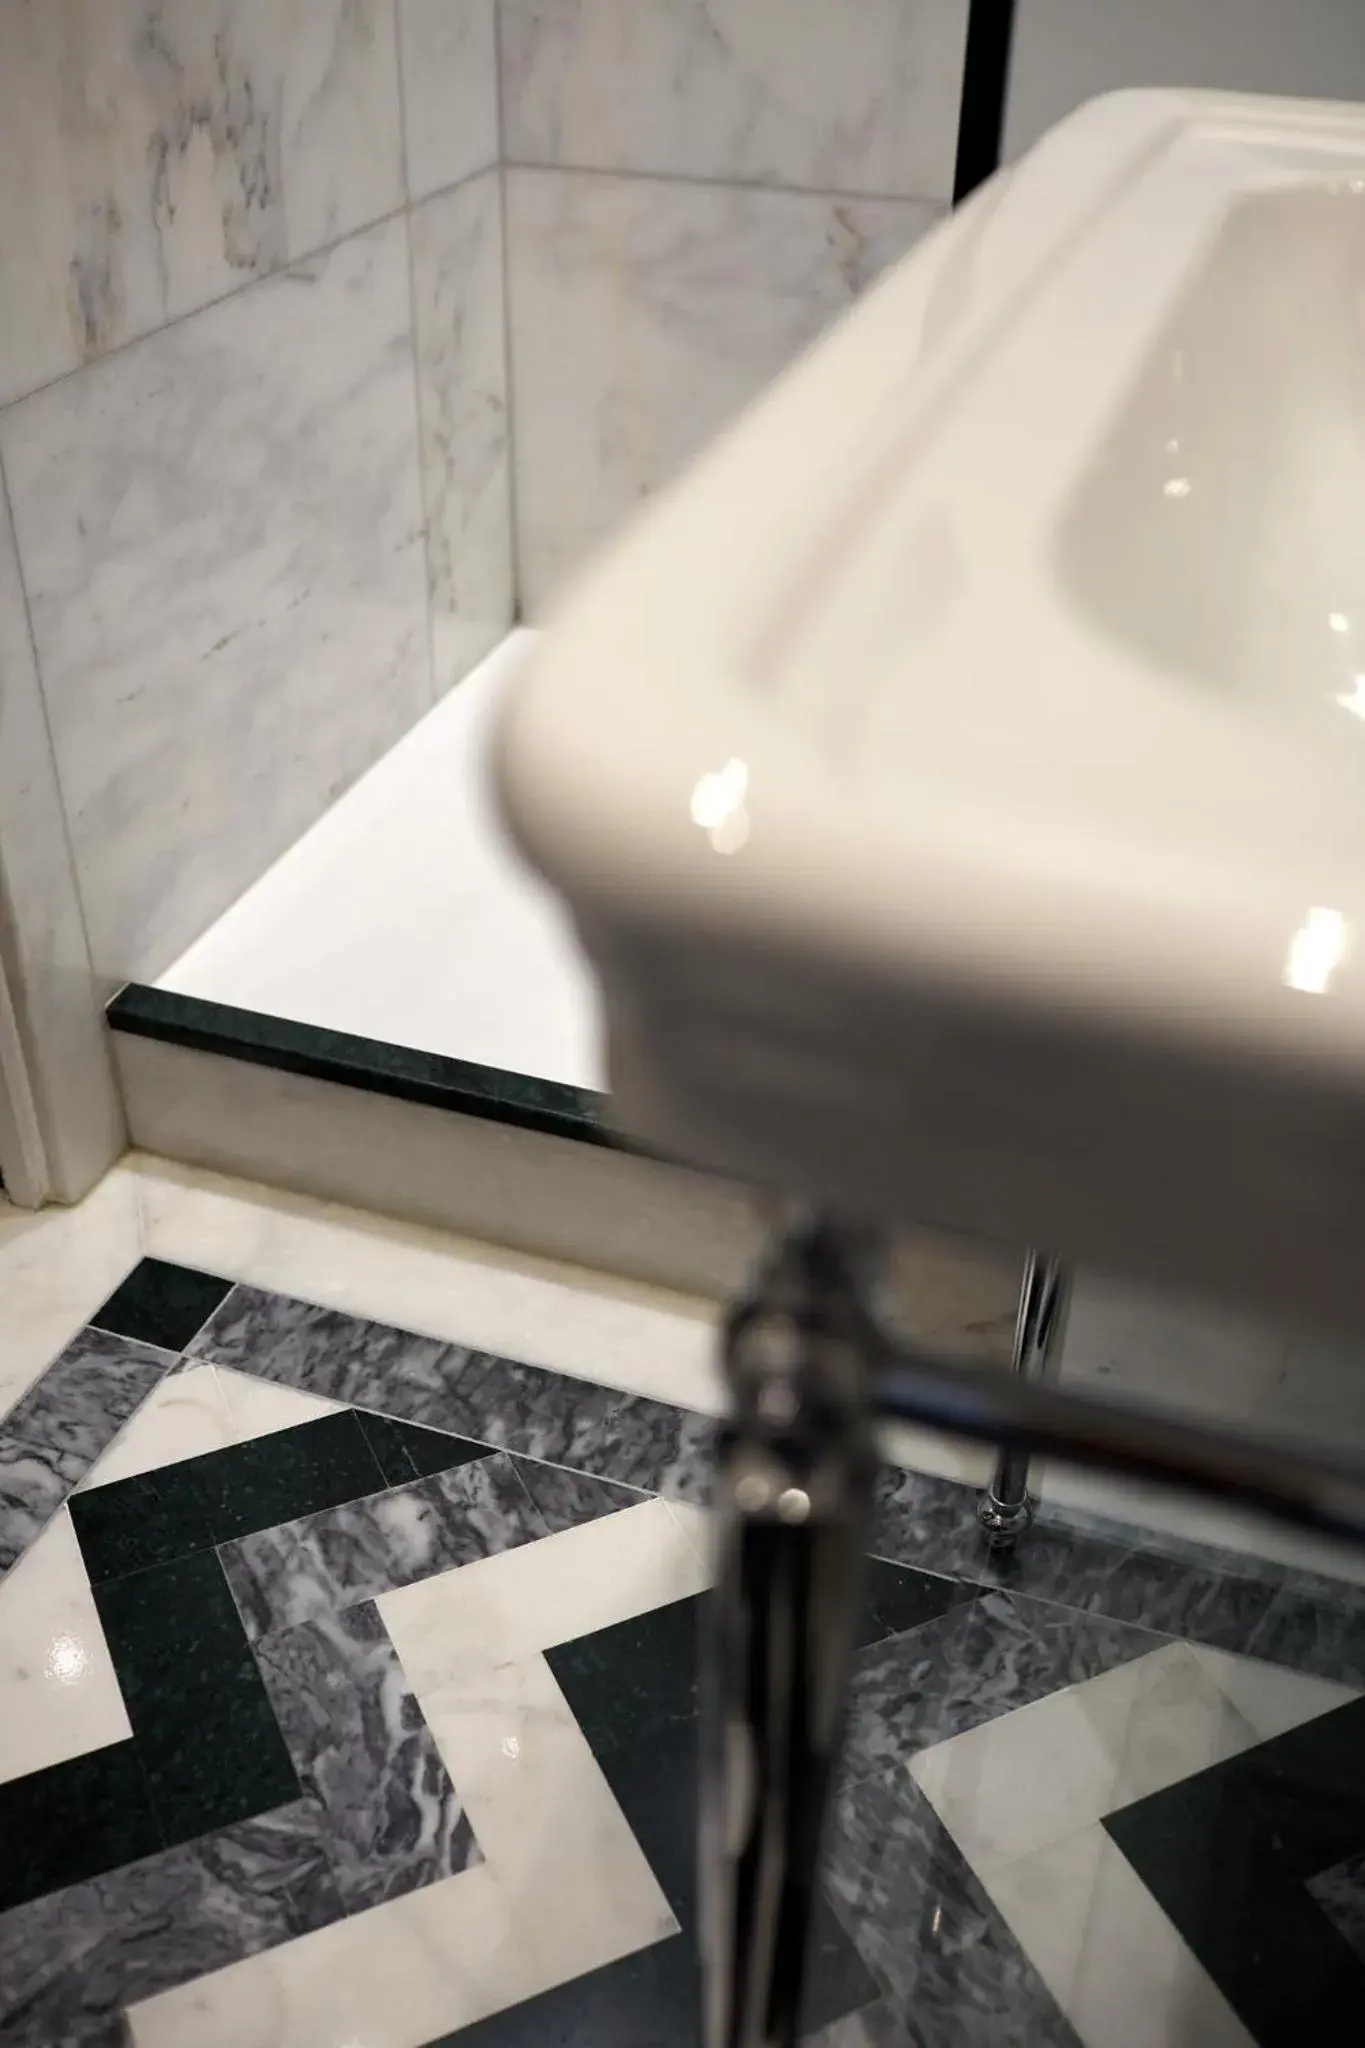 Bathroom in Hotel Saint Germain